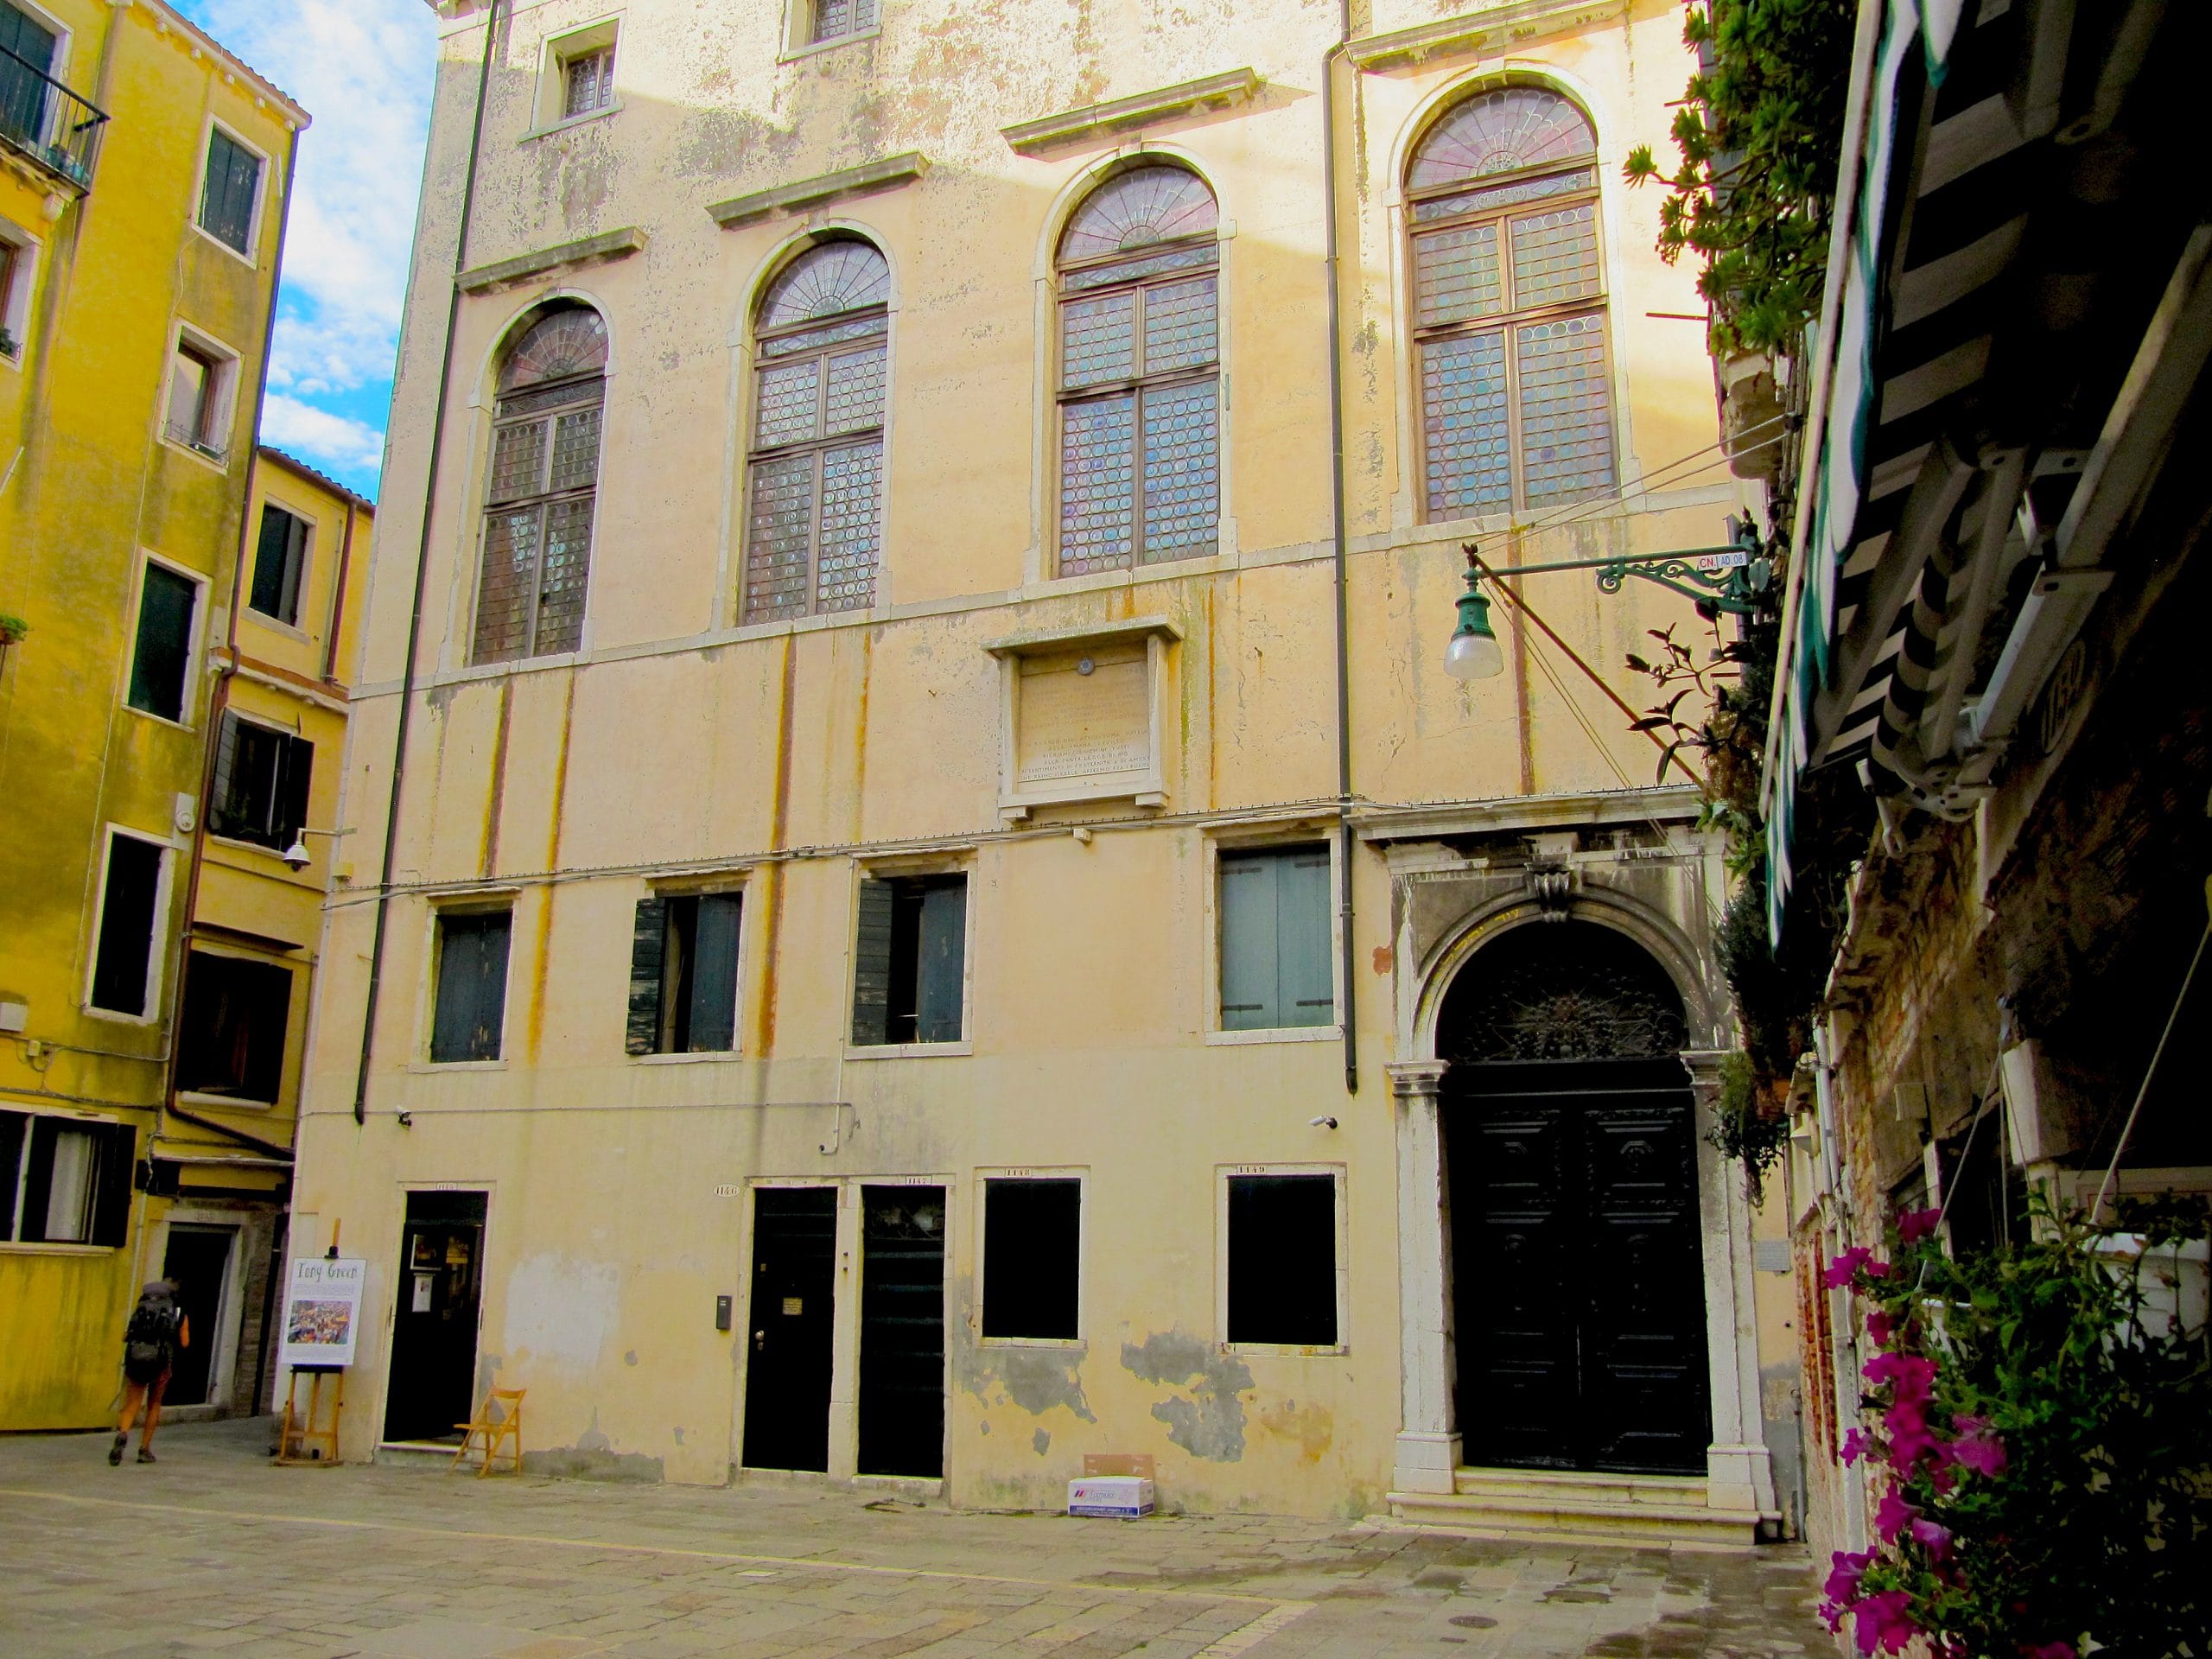 Synagogue in Ghetto Vecchio